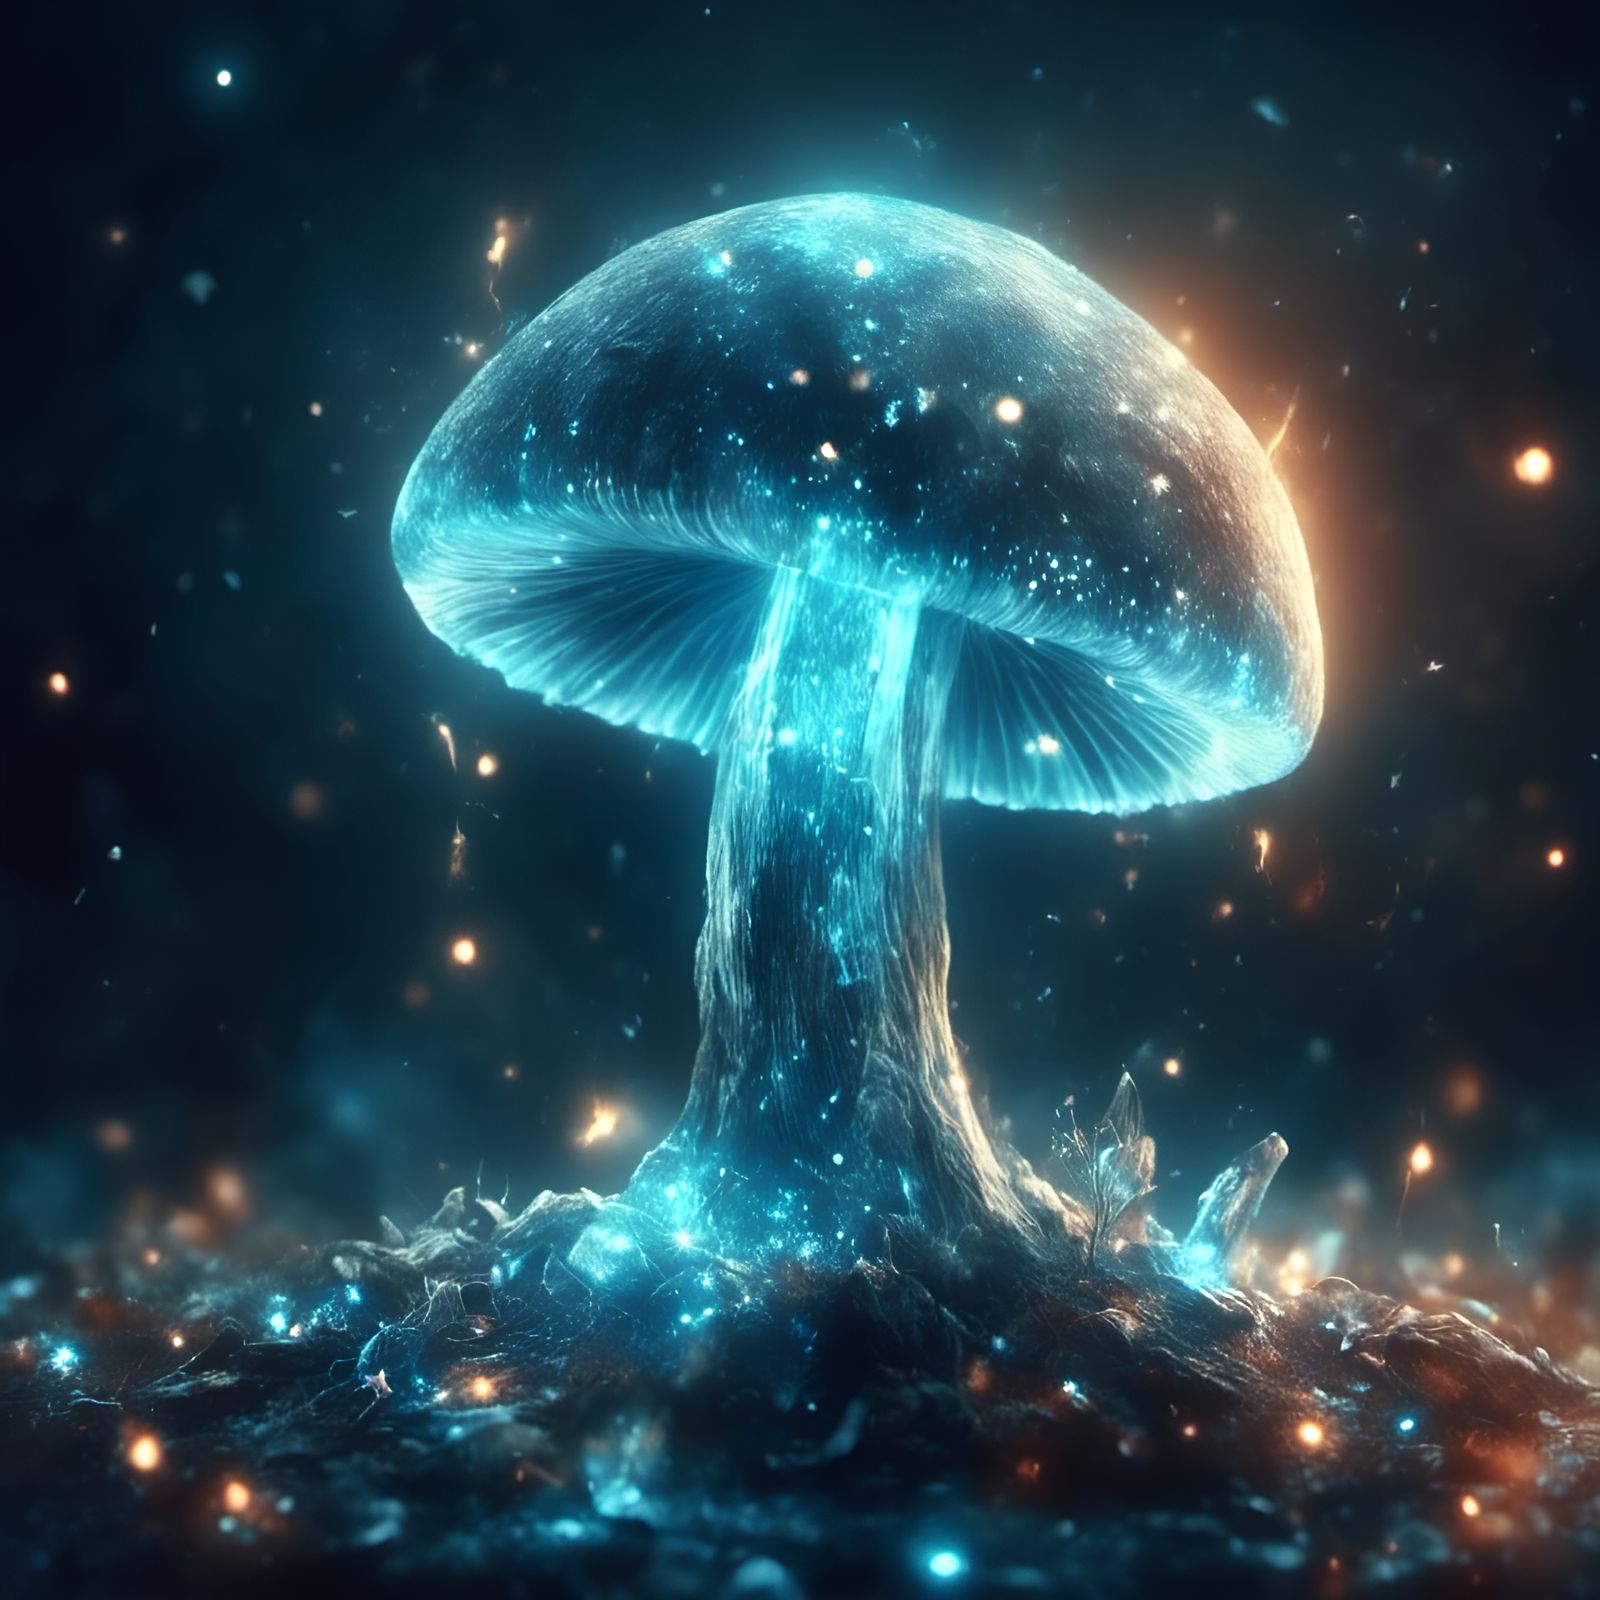 luminous mushroom